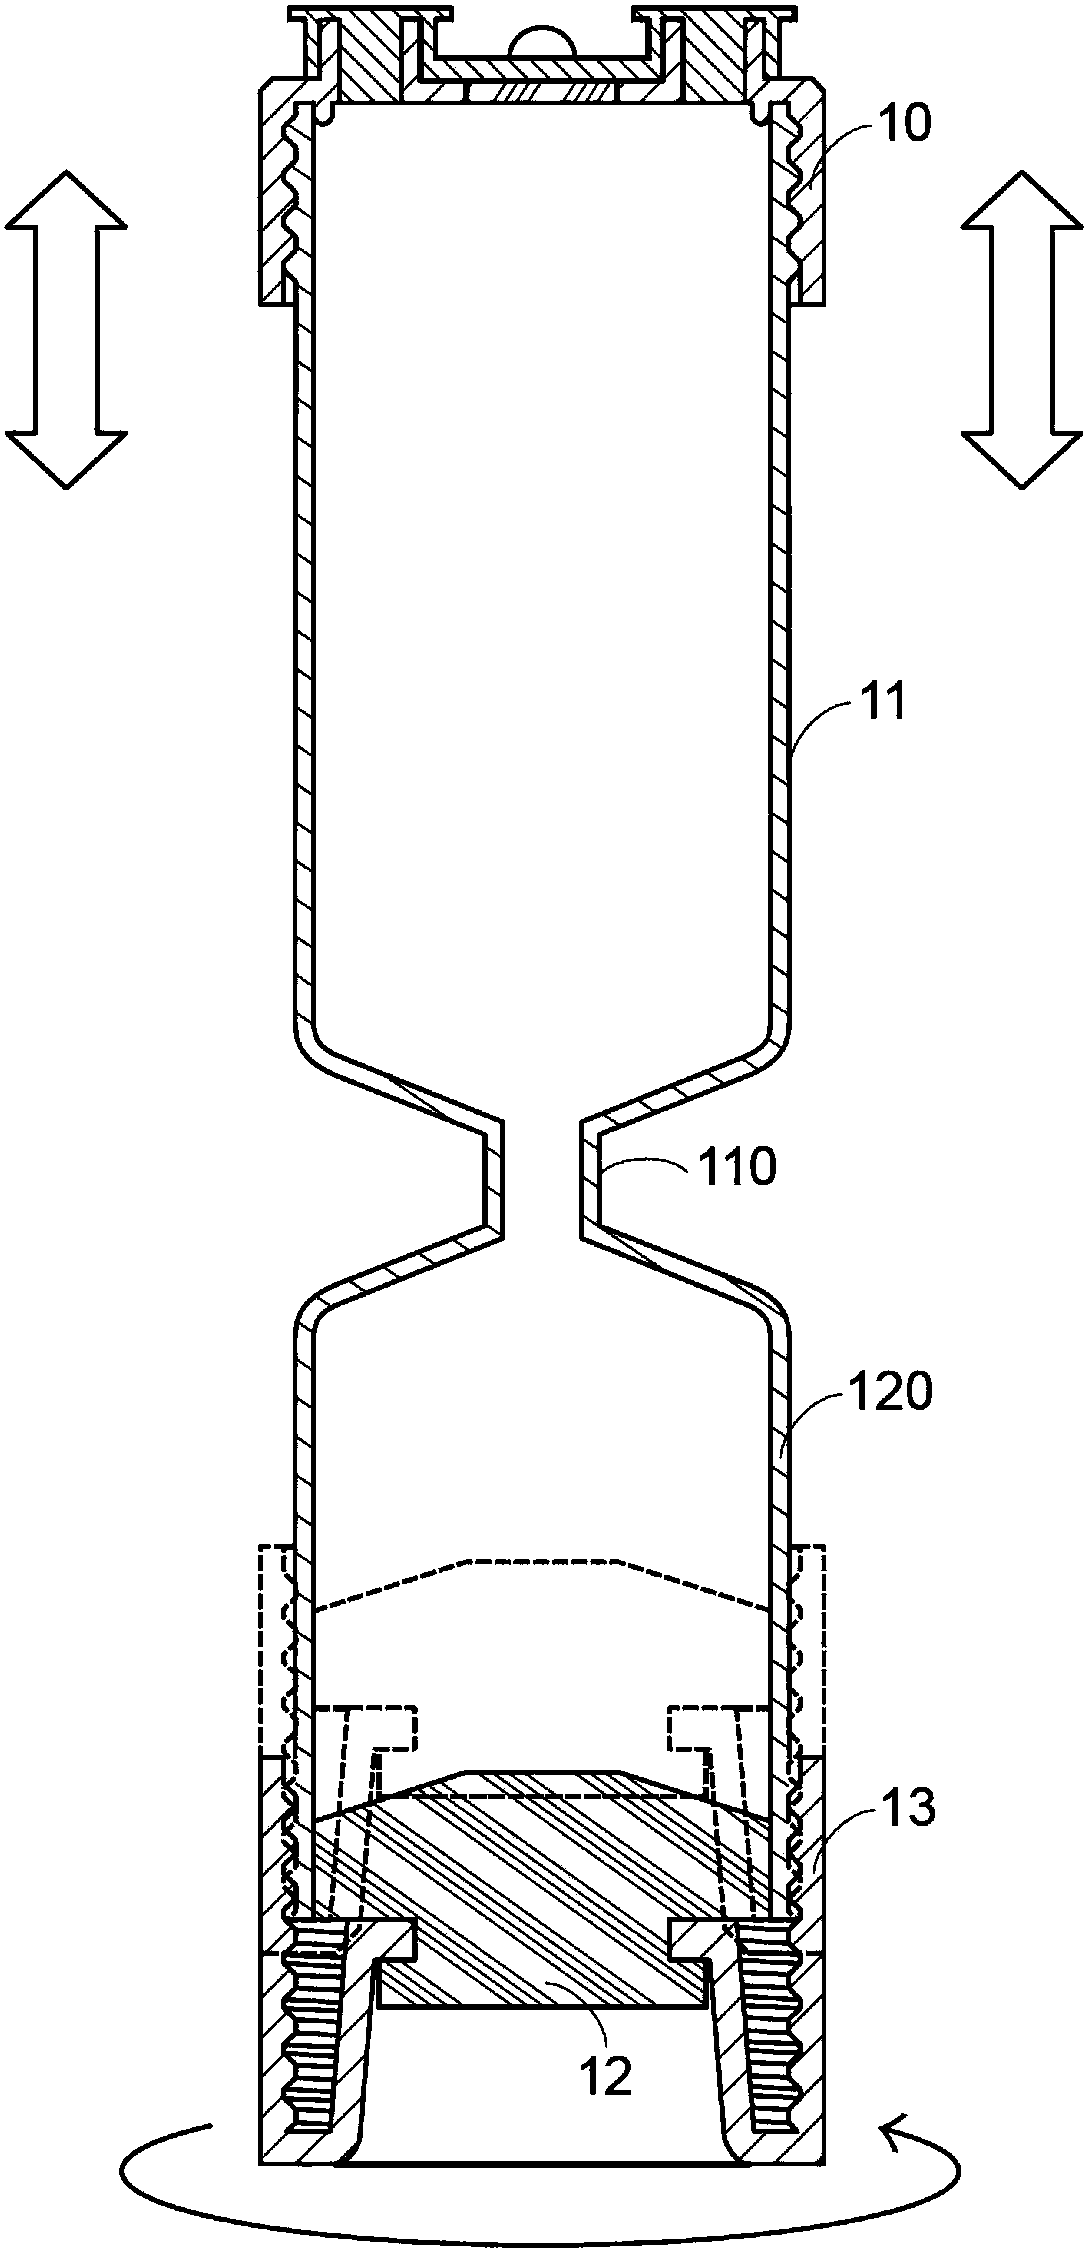 Centrifuge tube structure